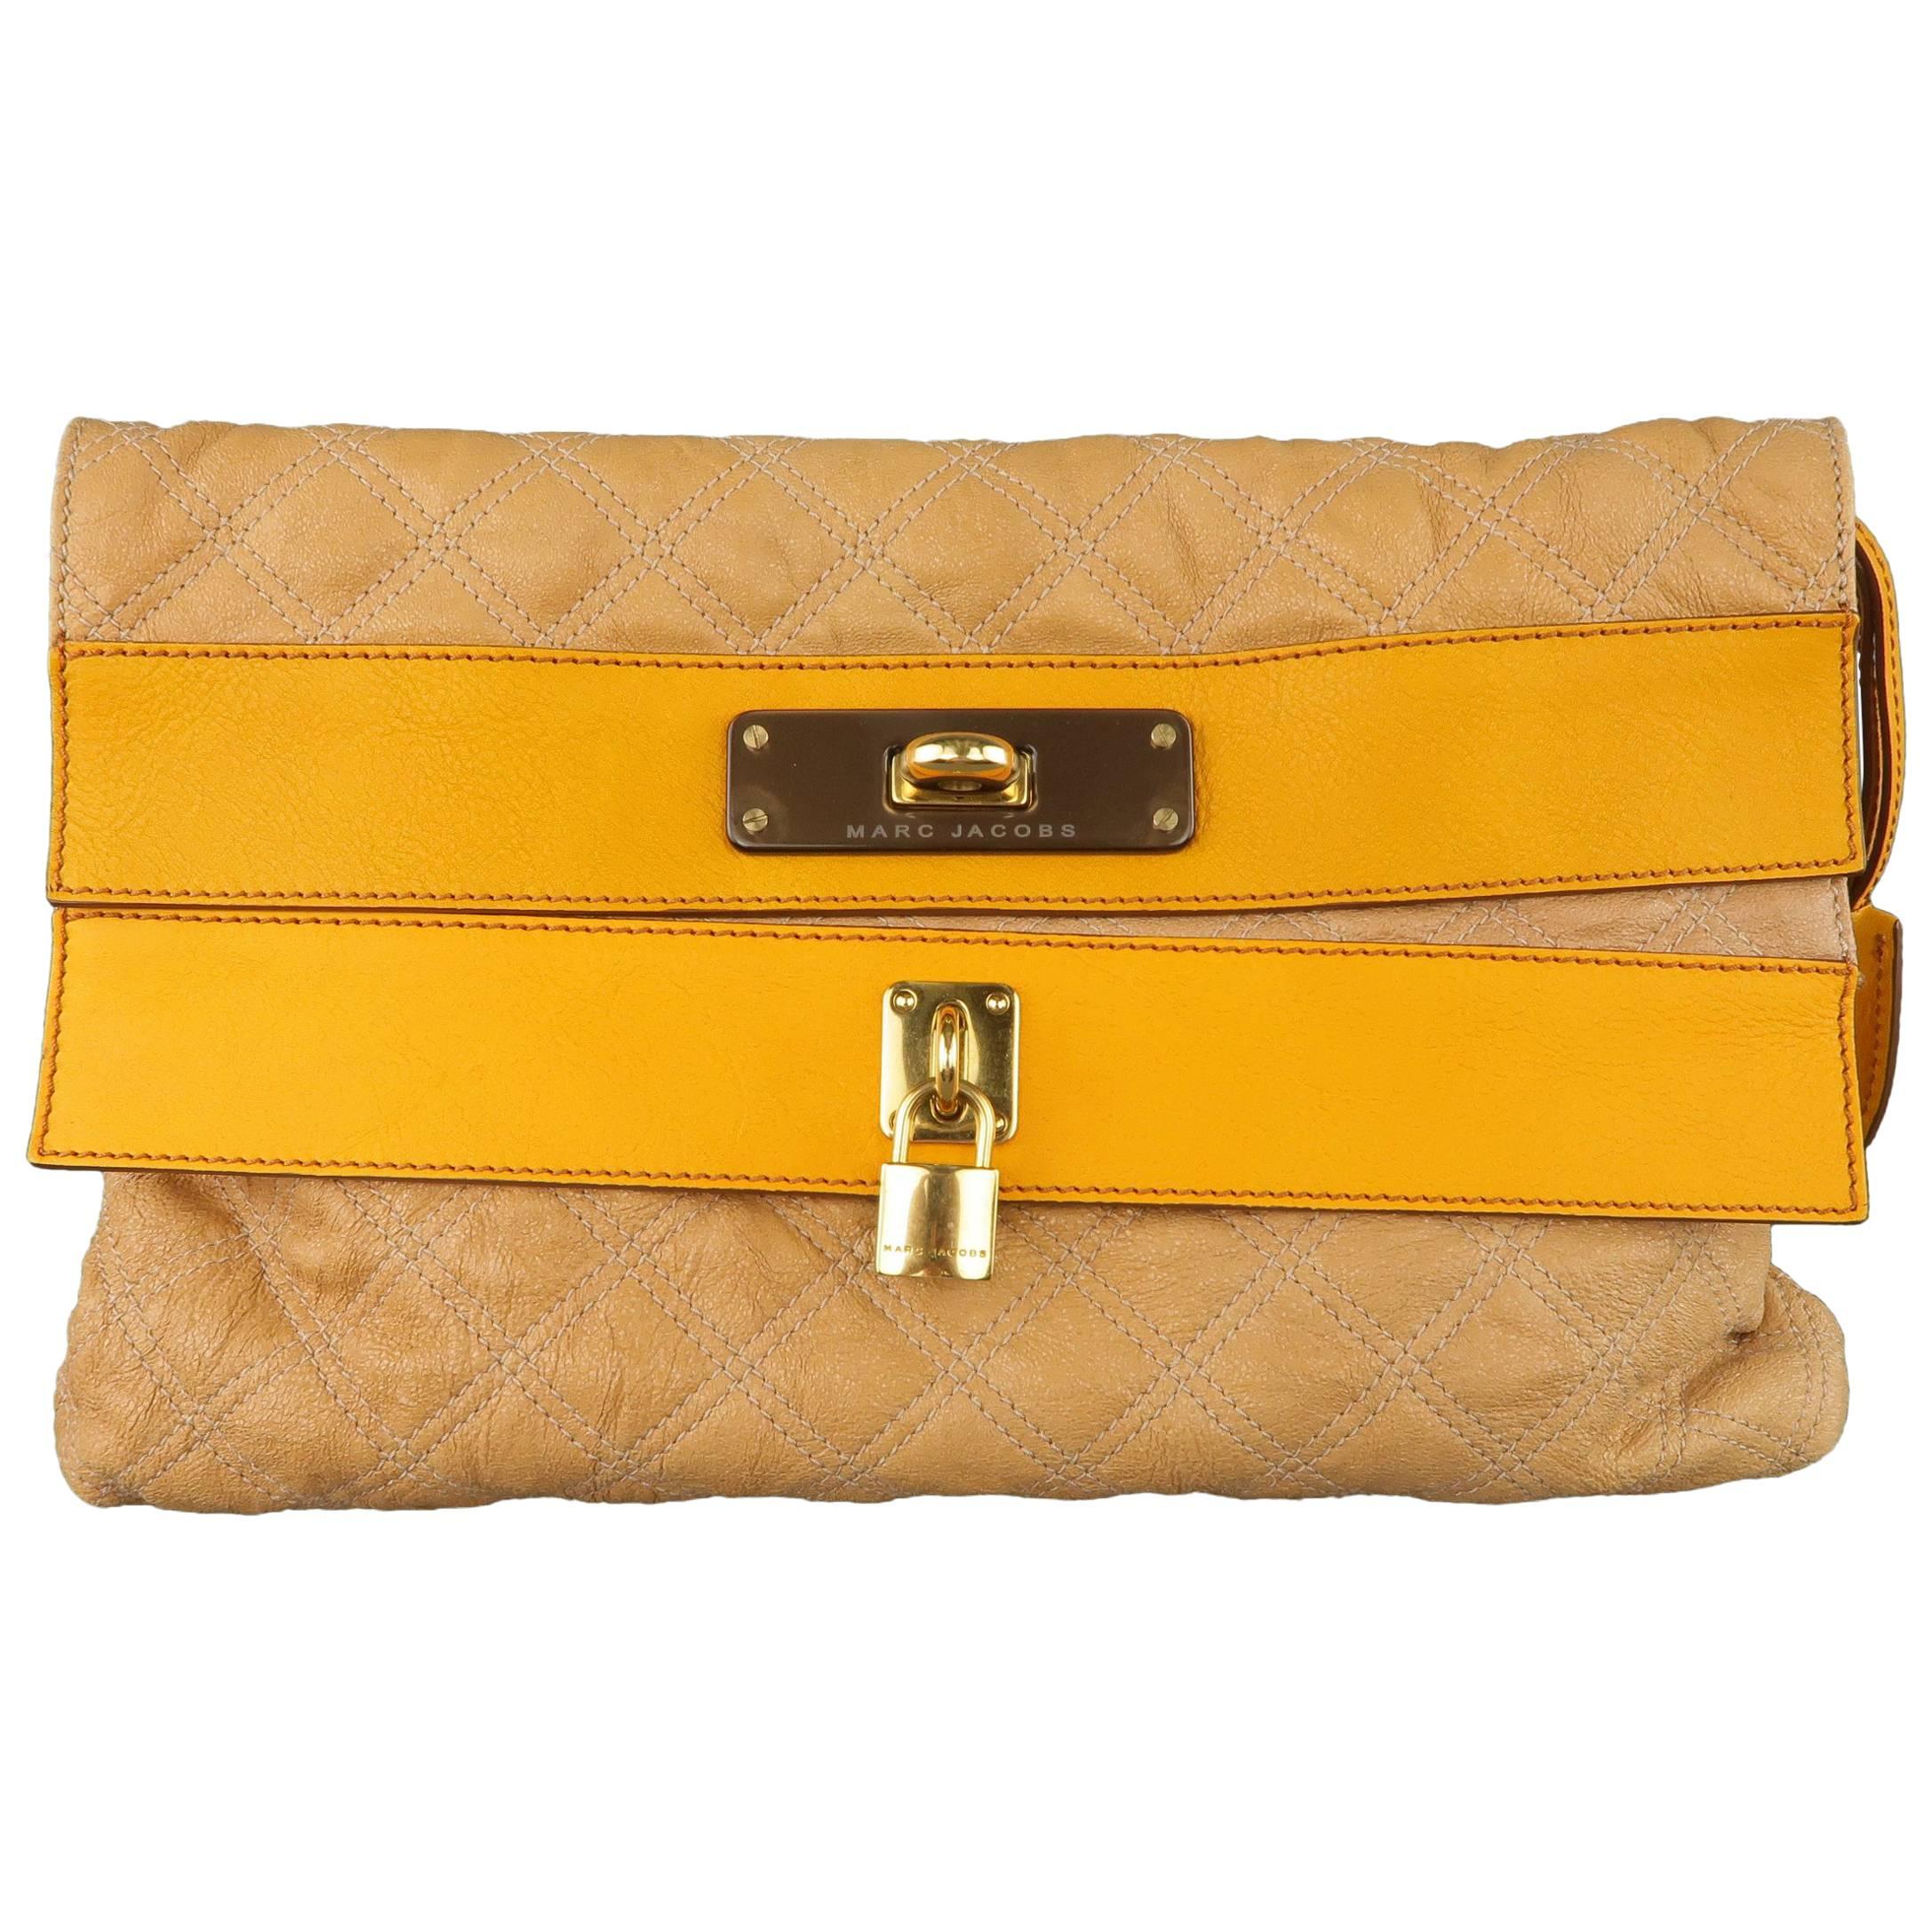 New Vintage Gold Marc Jacobs Evening Bag Clutch Shoulder Bag